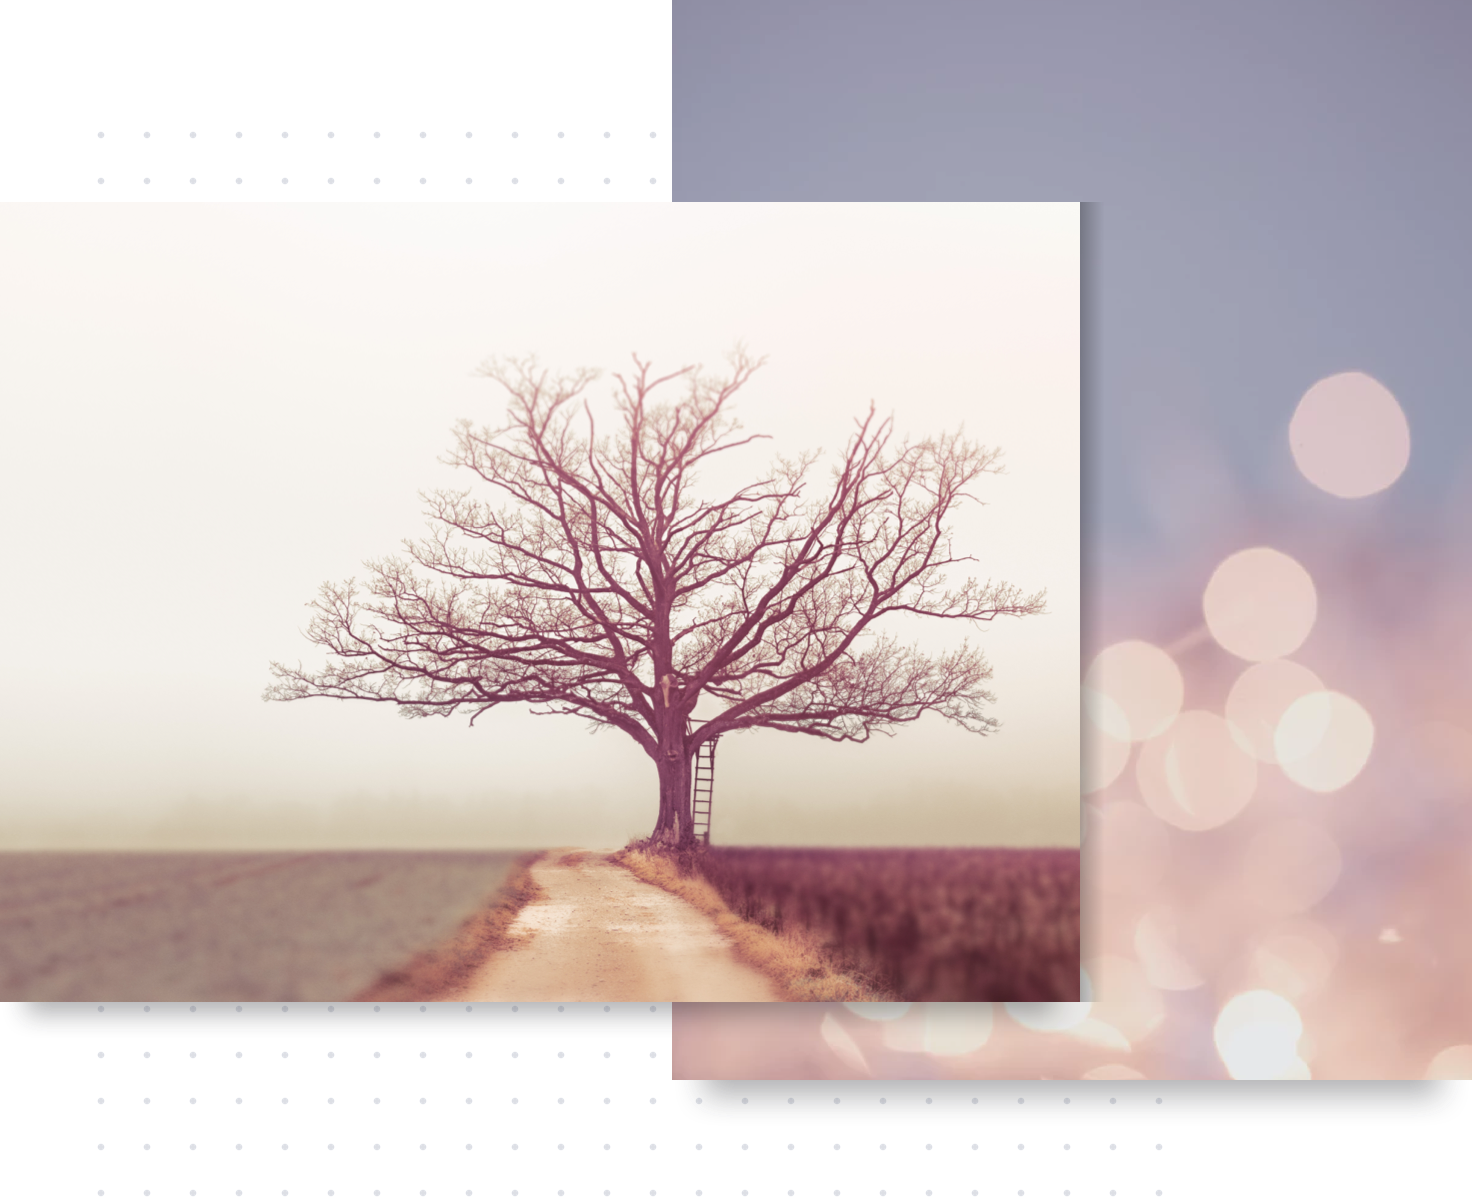 blur background photo editor online